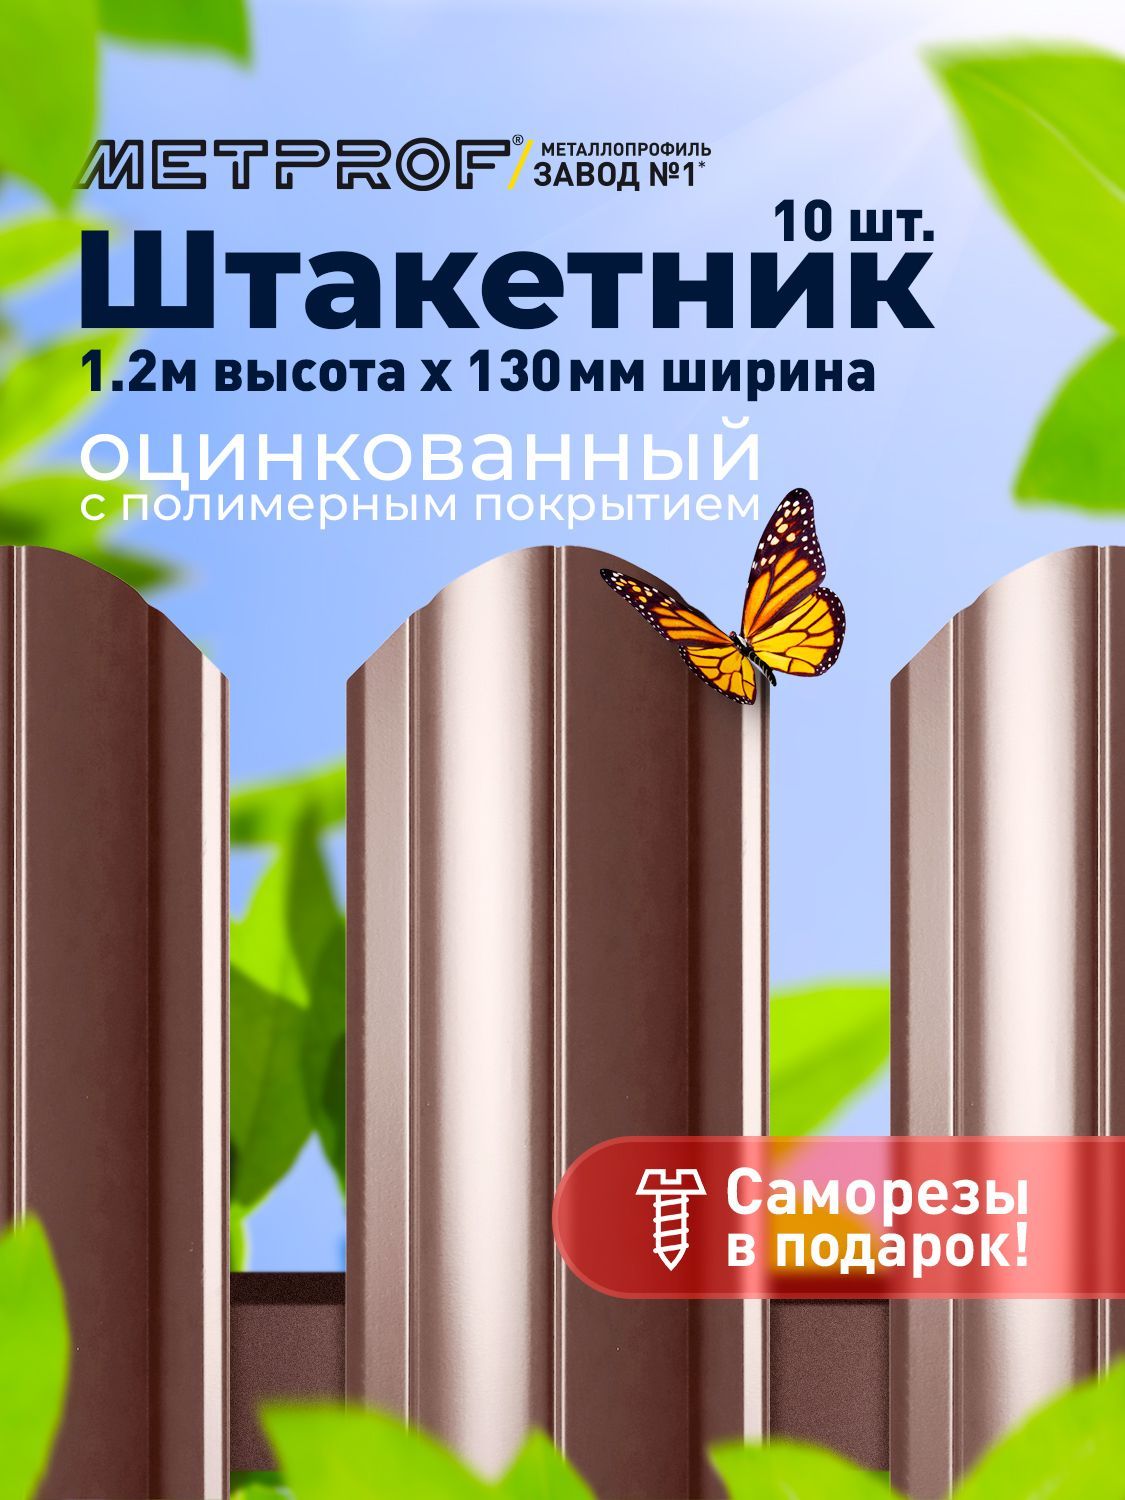 ЕвроштакетникLineметаллический/заборы/0.45толщина,цвет8017/8017(Шоколад)10шт.1.2м